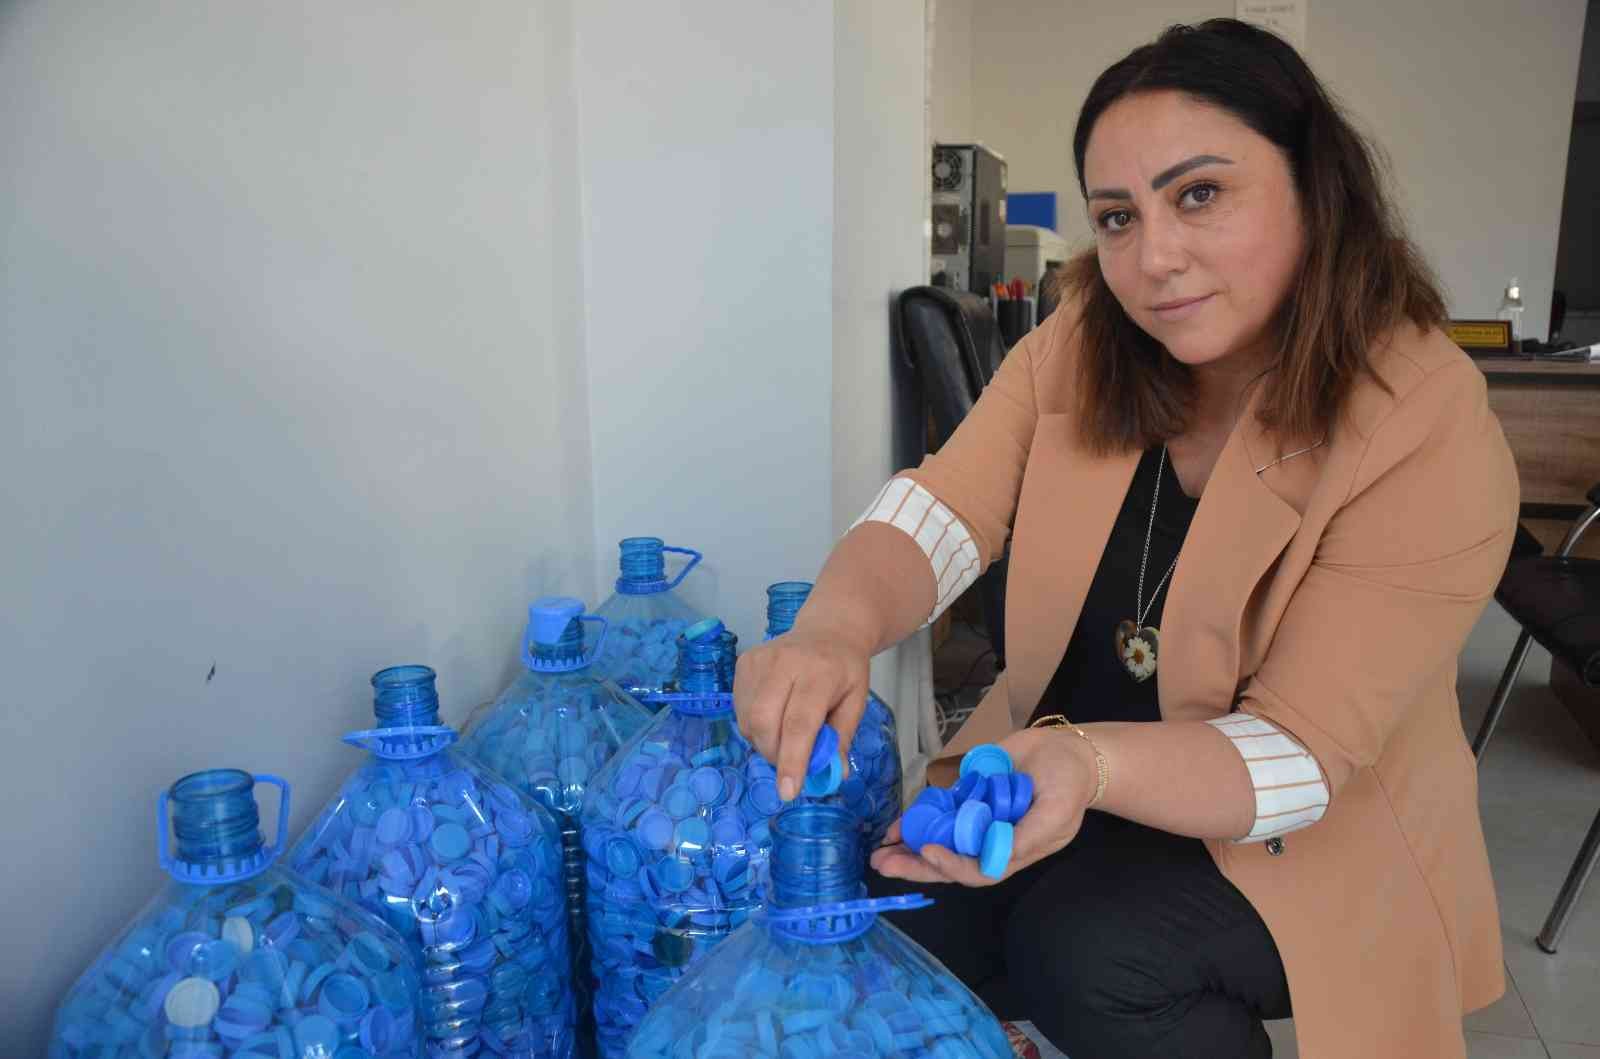 Kadın muhtar, engelliler için ‘mavi kapak’ kampanyası başlattı #ordu